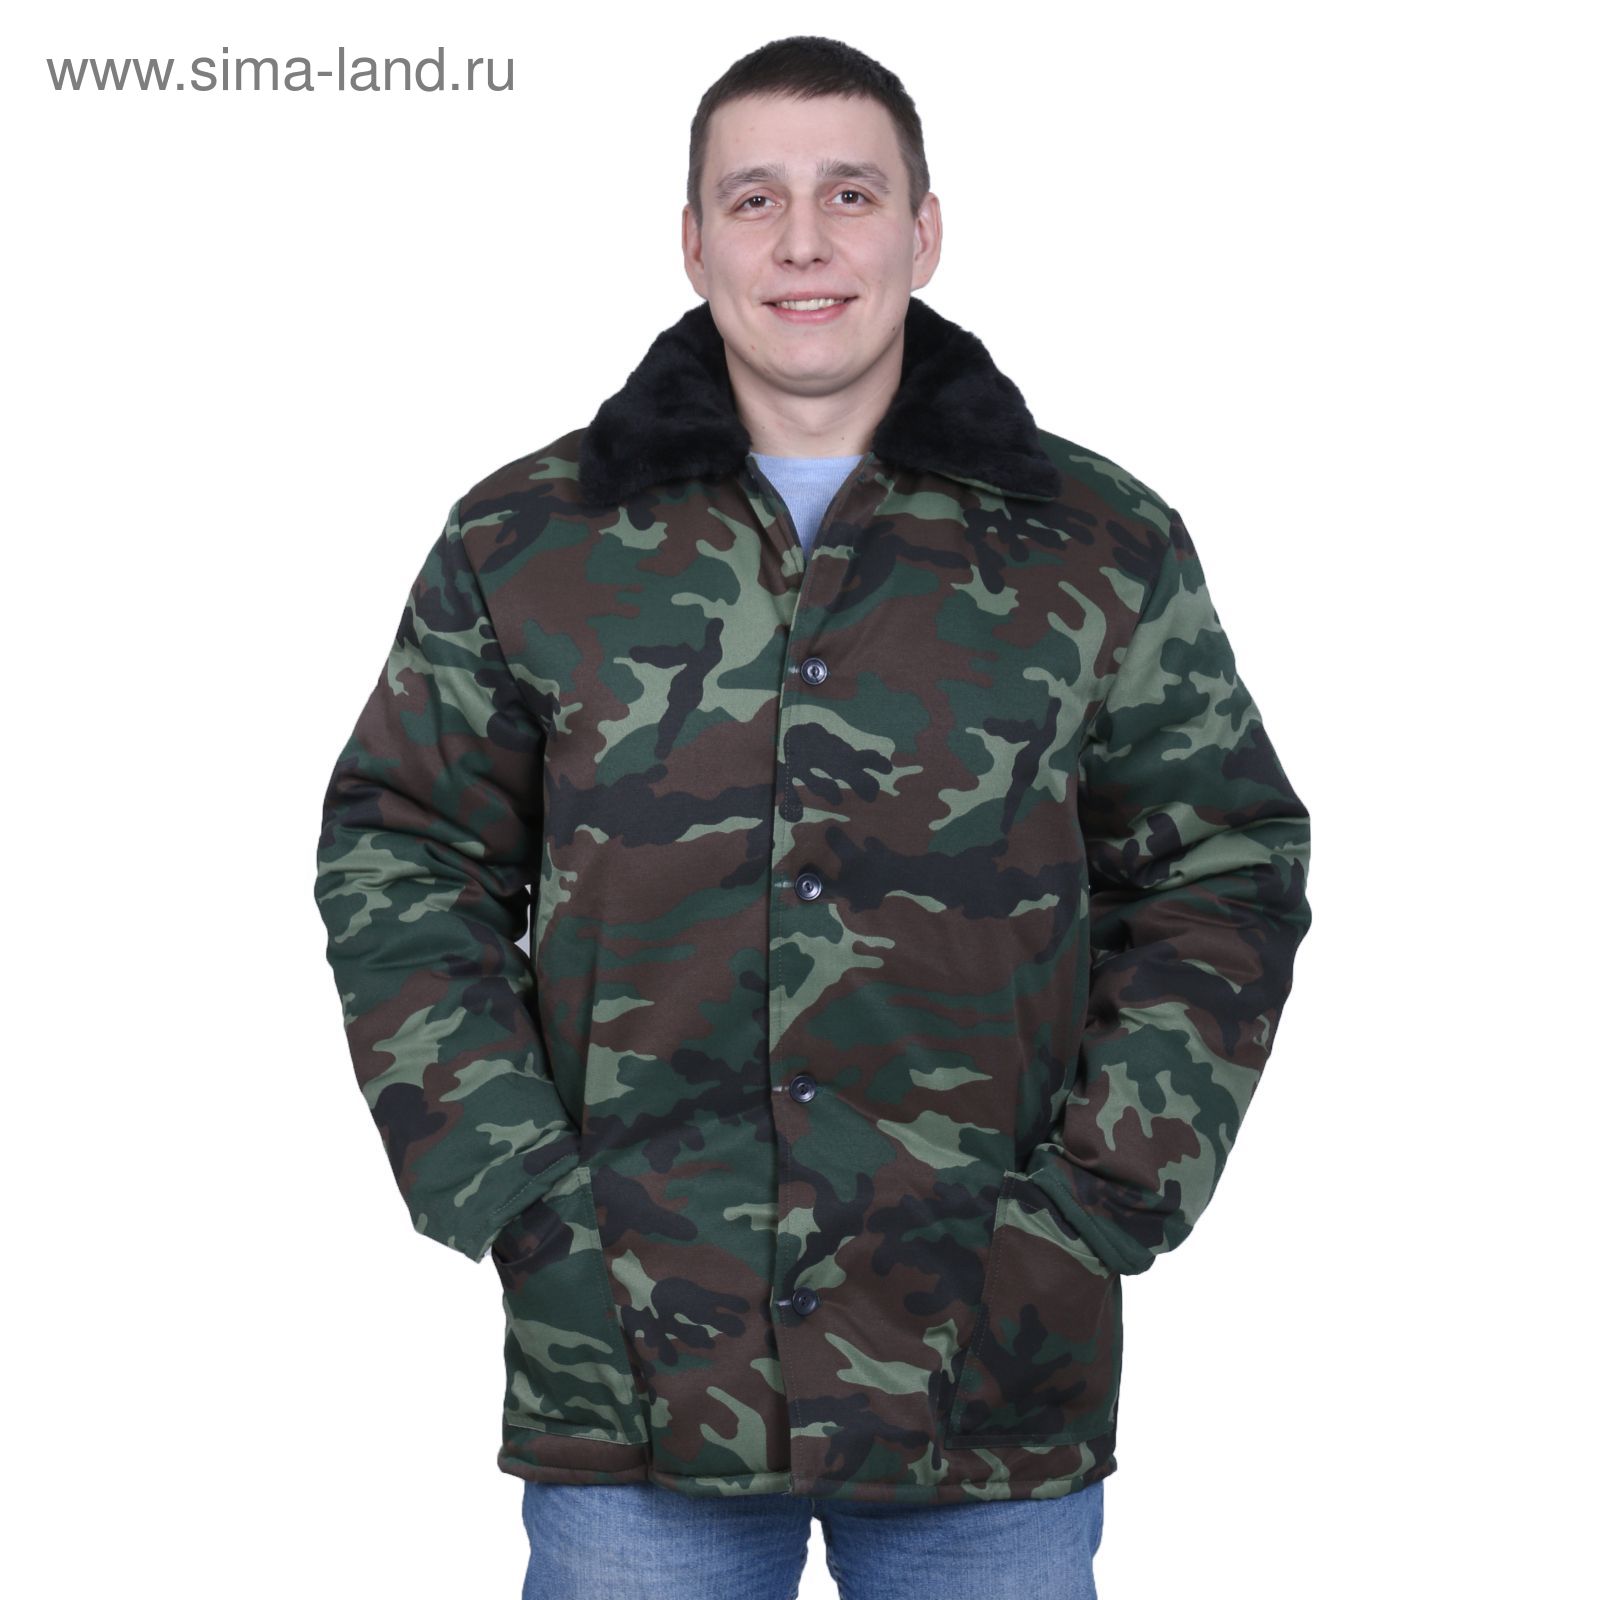 Куртка утеплённая, размер 48, рост 182-188 см, цвет зелёный